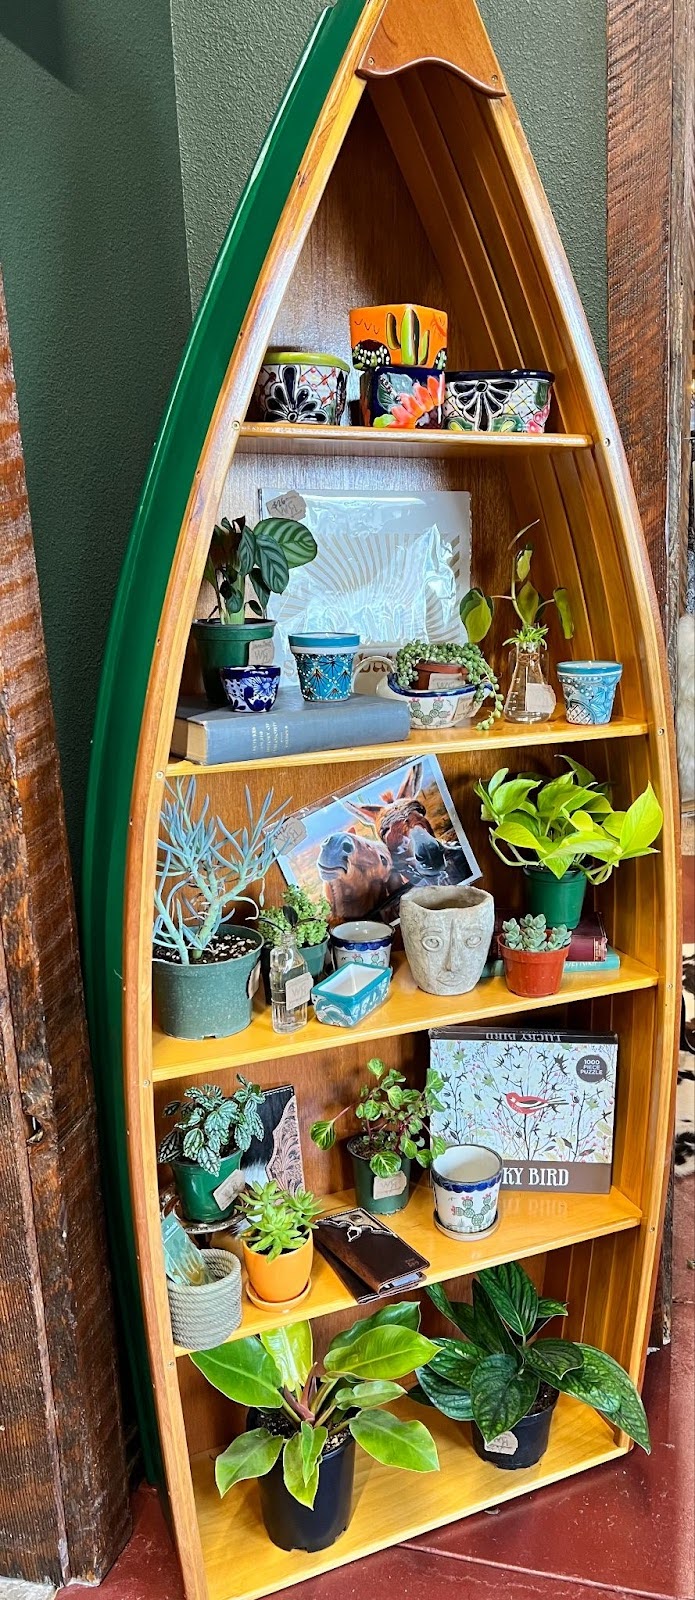 Shelf full of objects